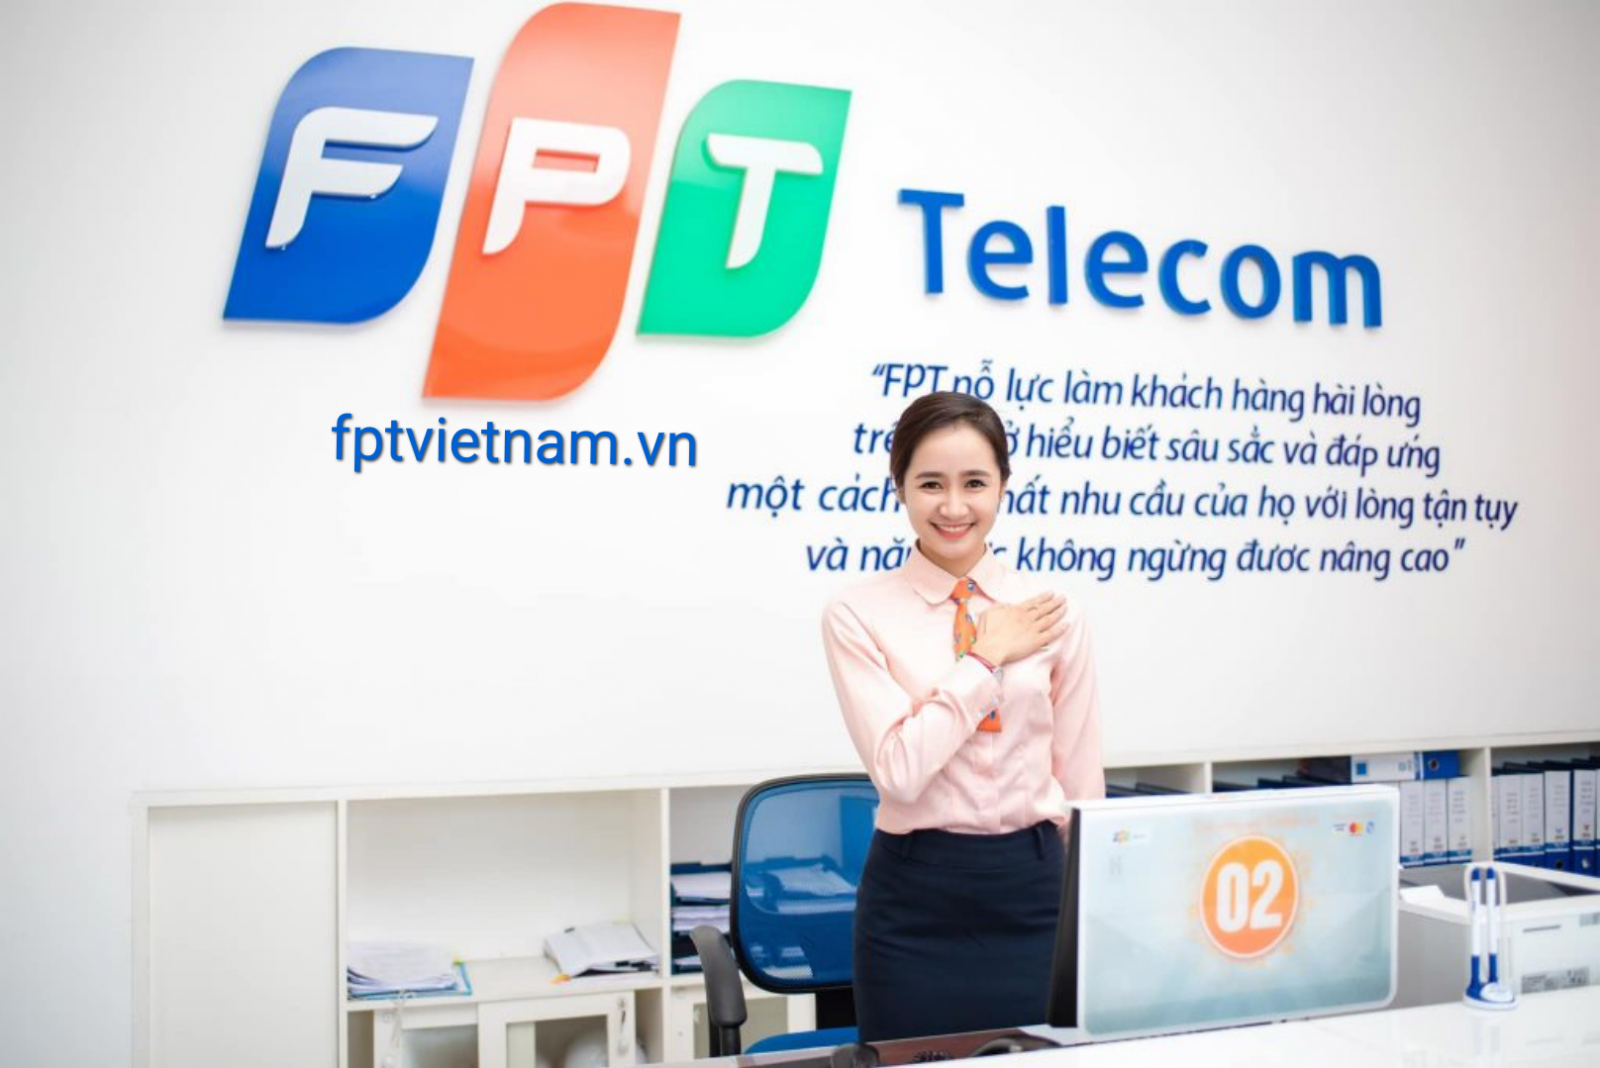 dịch vụ fpt telecom Đắk Nông